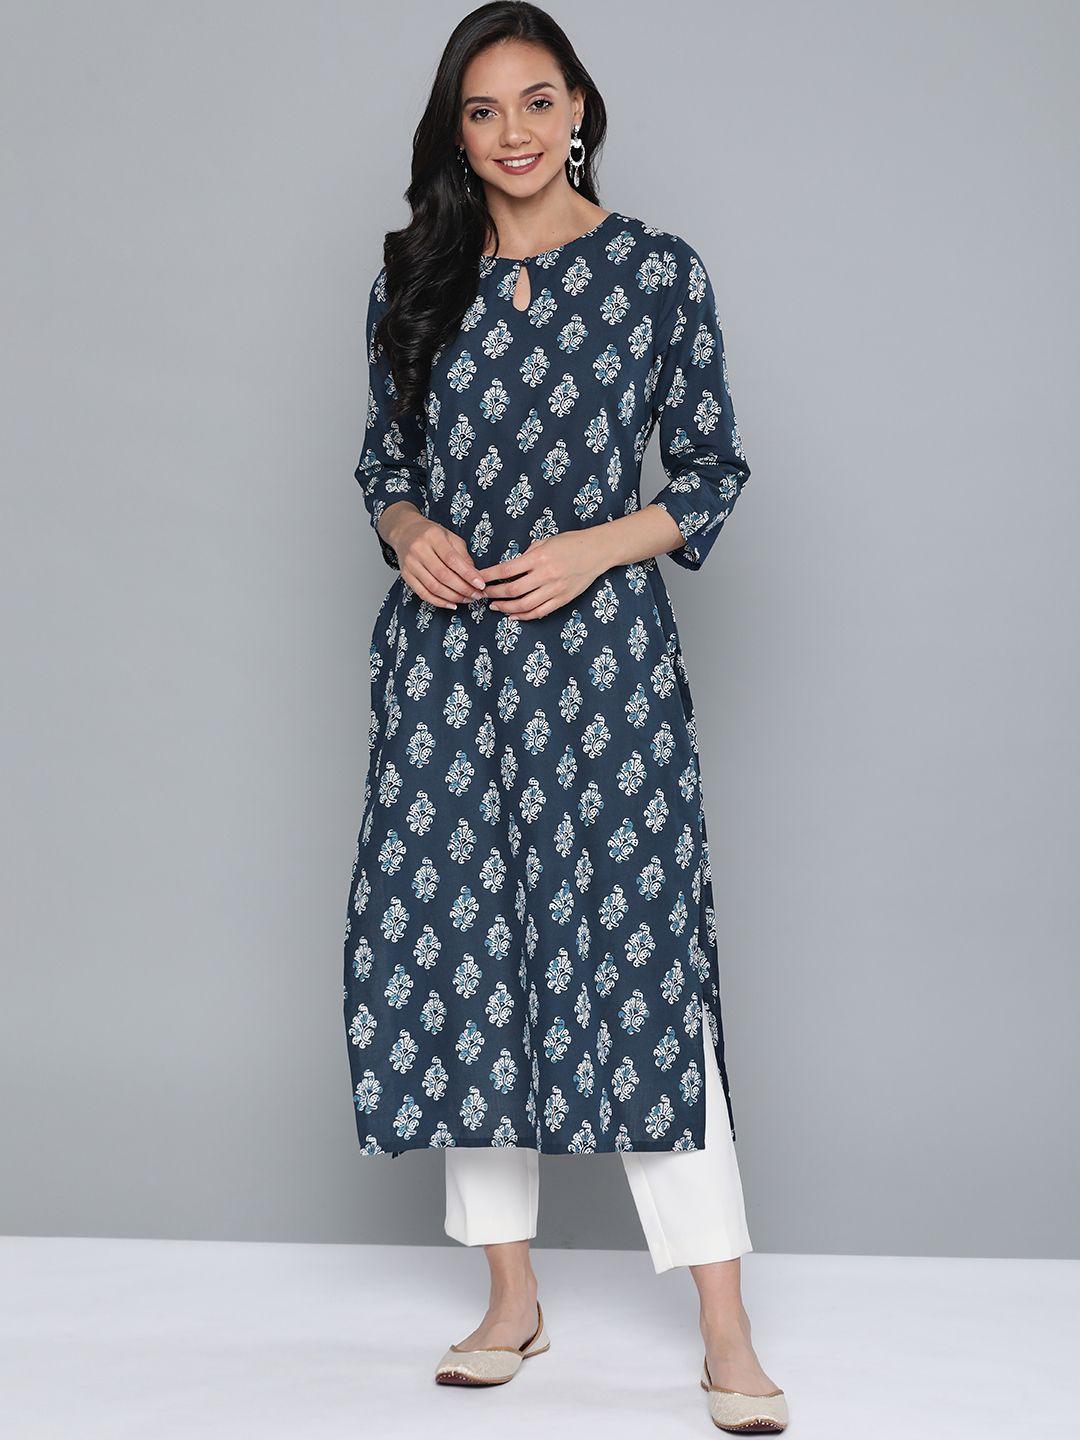 here&now women navy blue & white printed pure cotton straight kurta